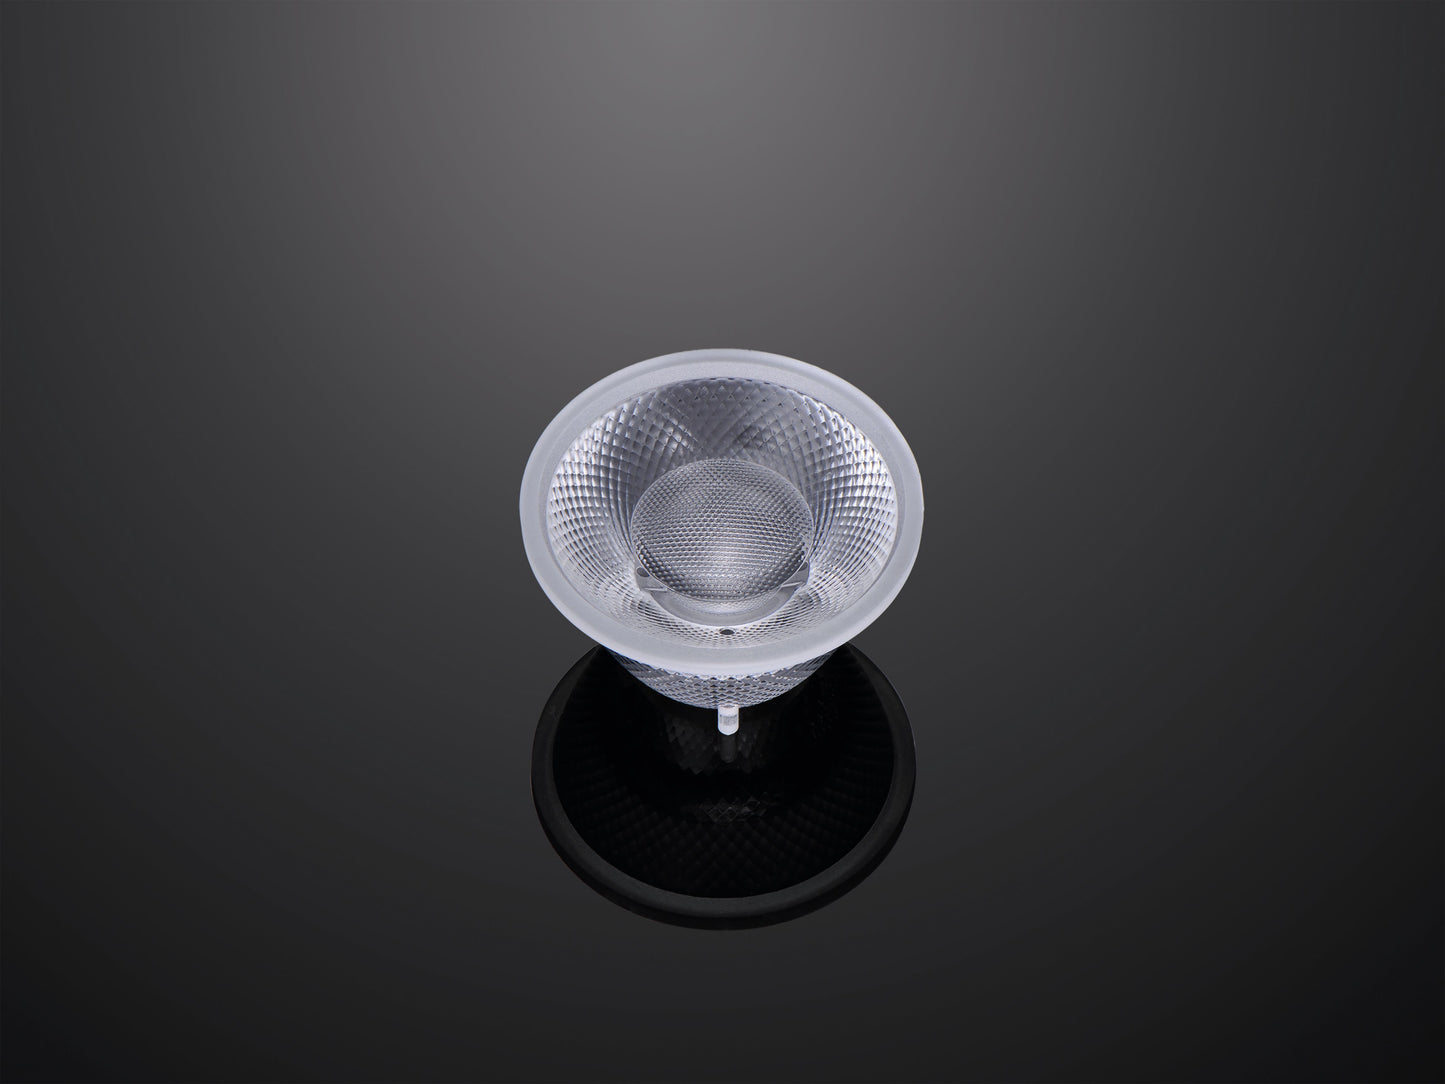 60mm cob čočka 15 24 36 stupňů pmma cob čočka přizpůsobená LED čočka Spotlight